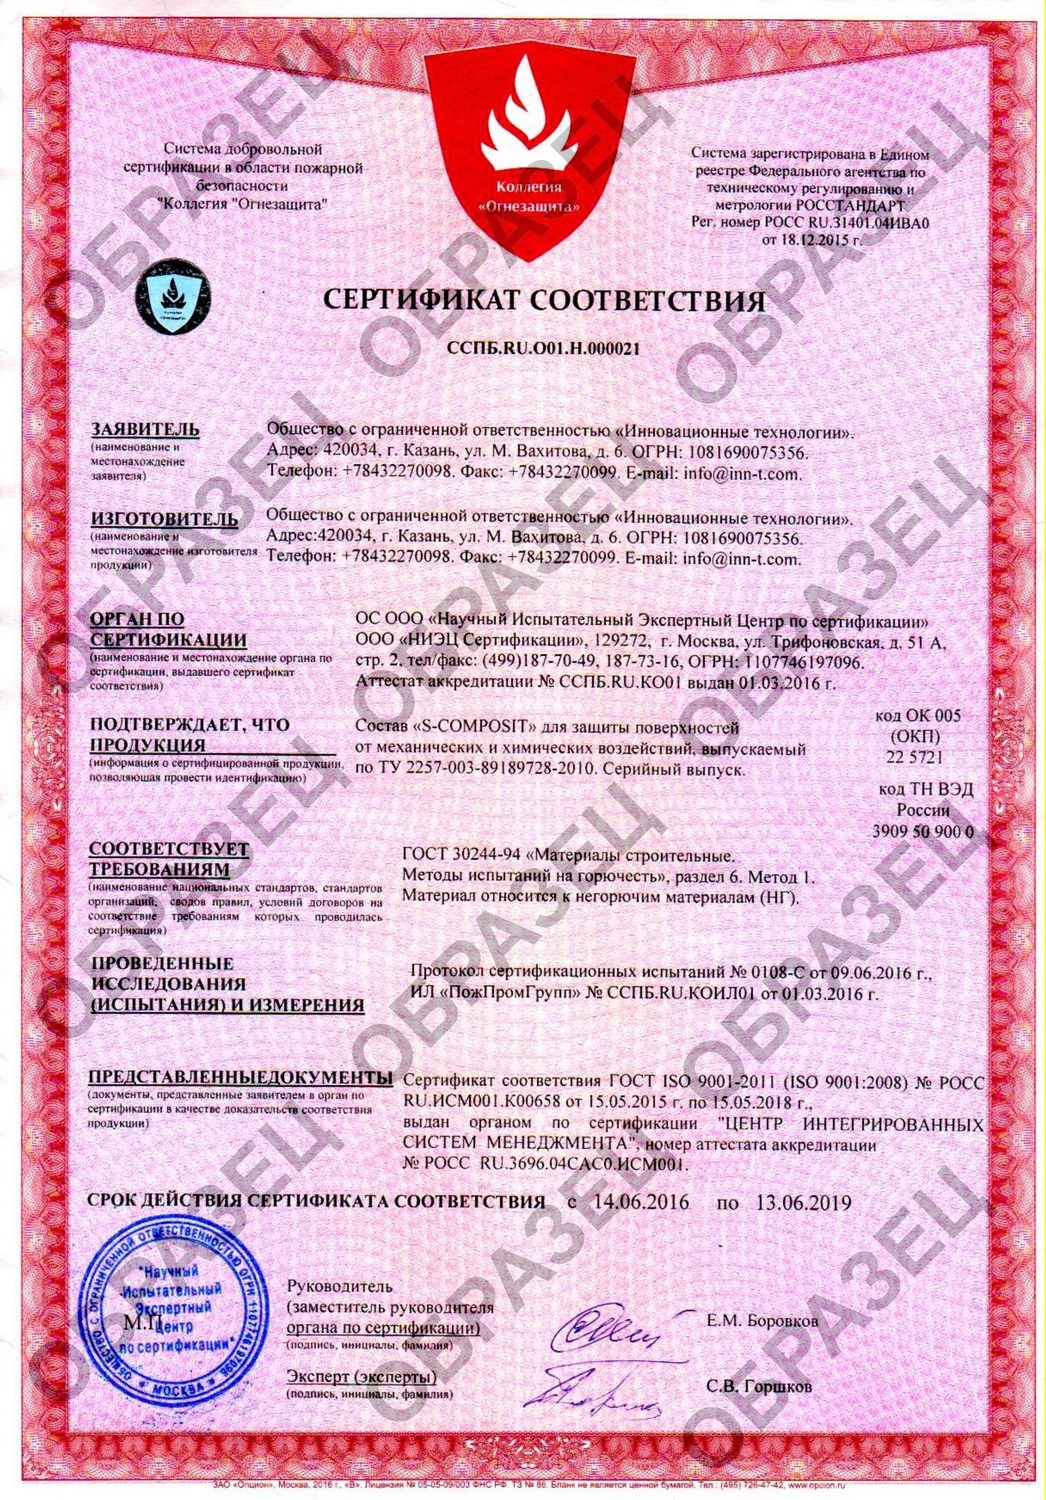 Нами получен пожарный сертификат на защитные покрытия S-COMPOSIT